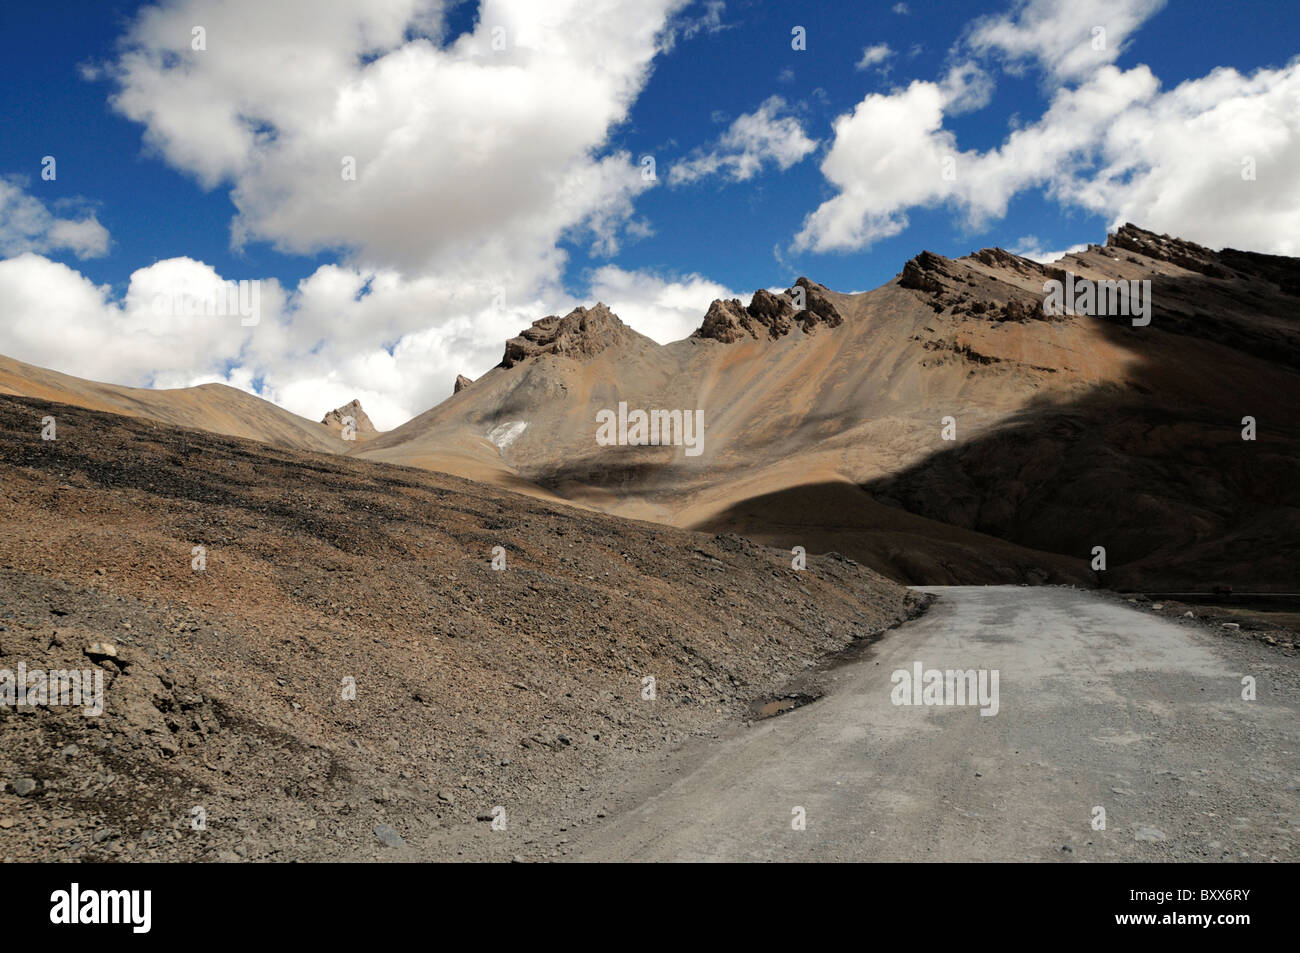 Une section de la route reliant Manali et Leh en Inde, souvent surnommée la "Route de l'Himalaya'. Banque D'Images